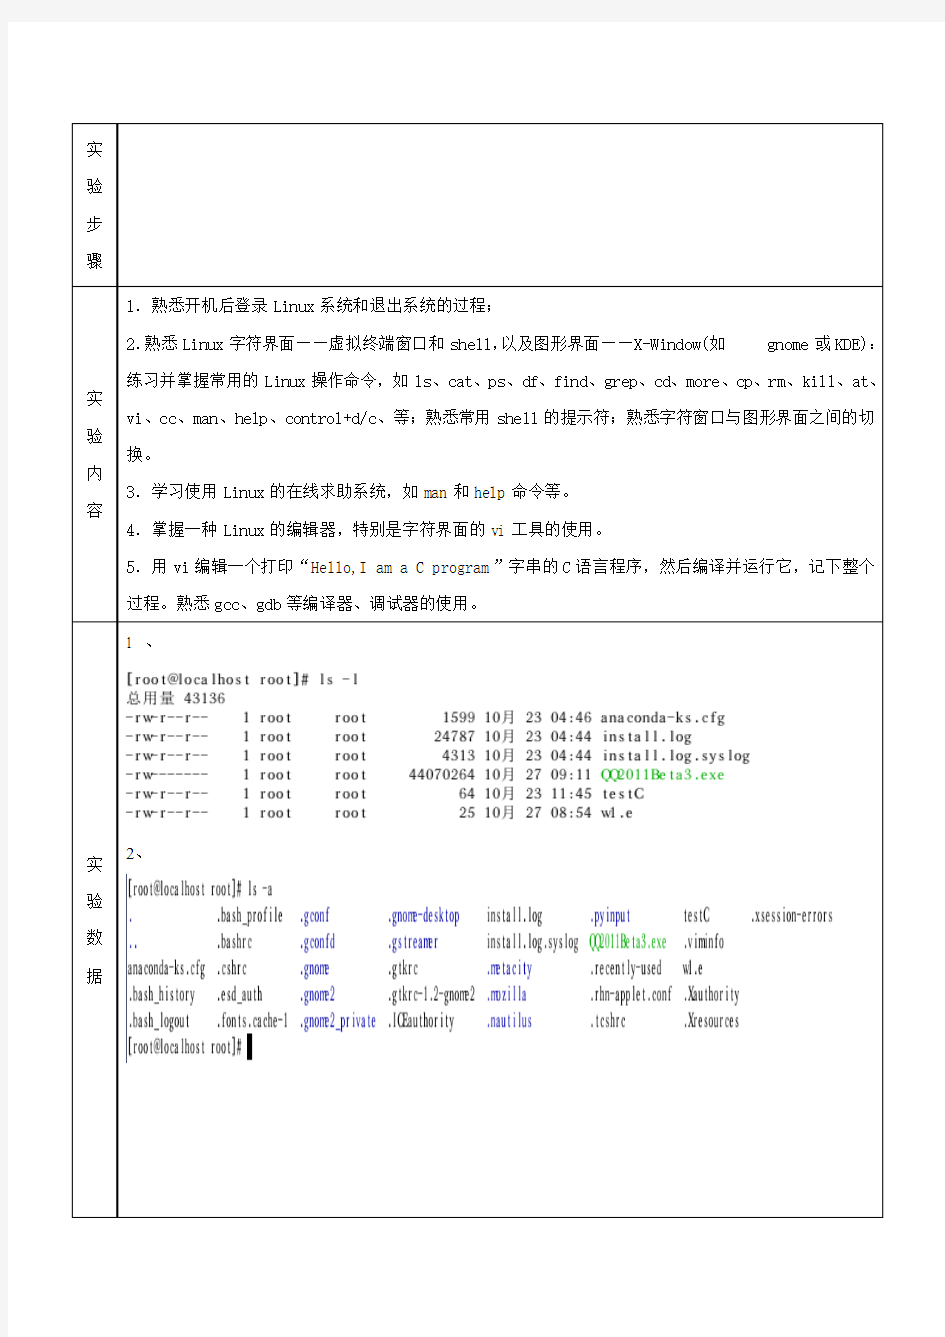 王荣森  (0908060386)操作系统实验报告(一)